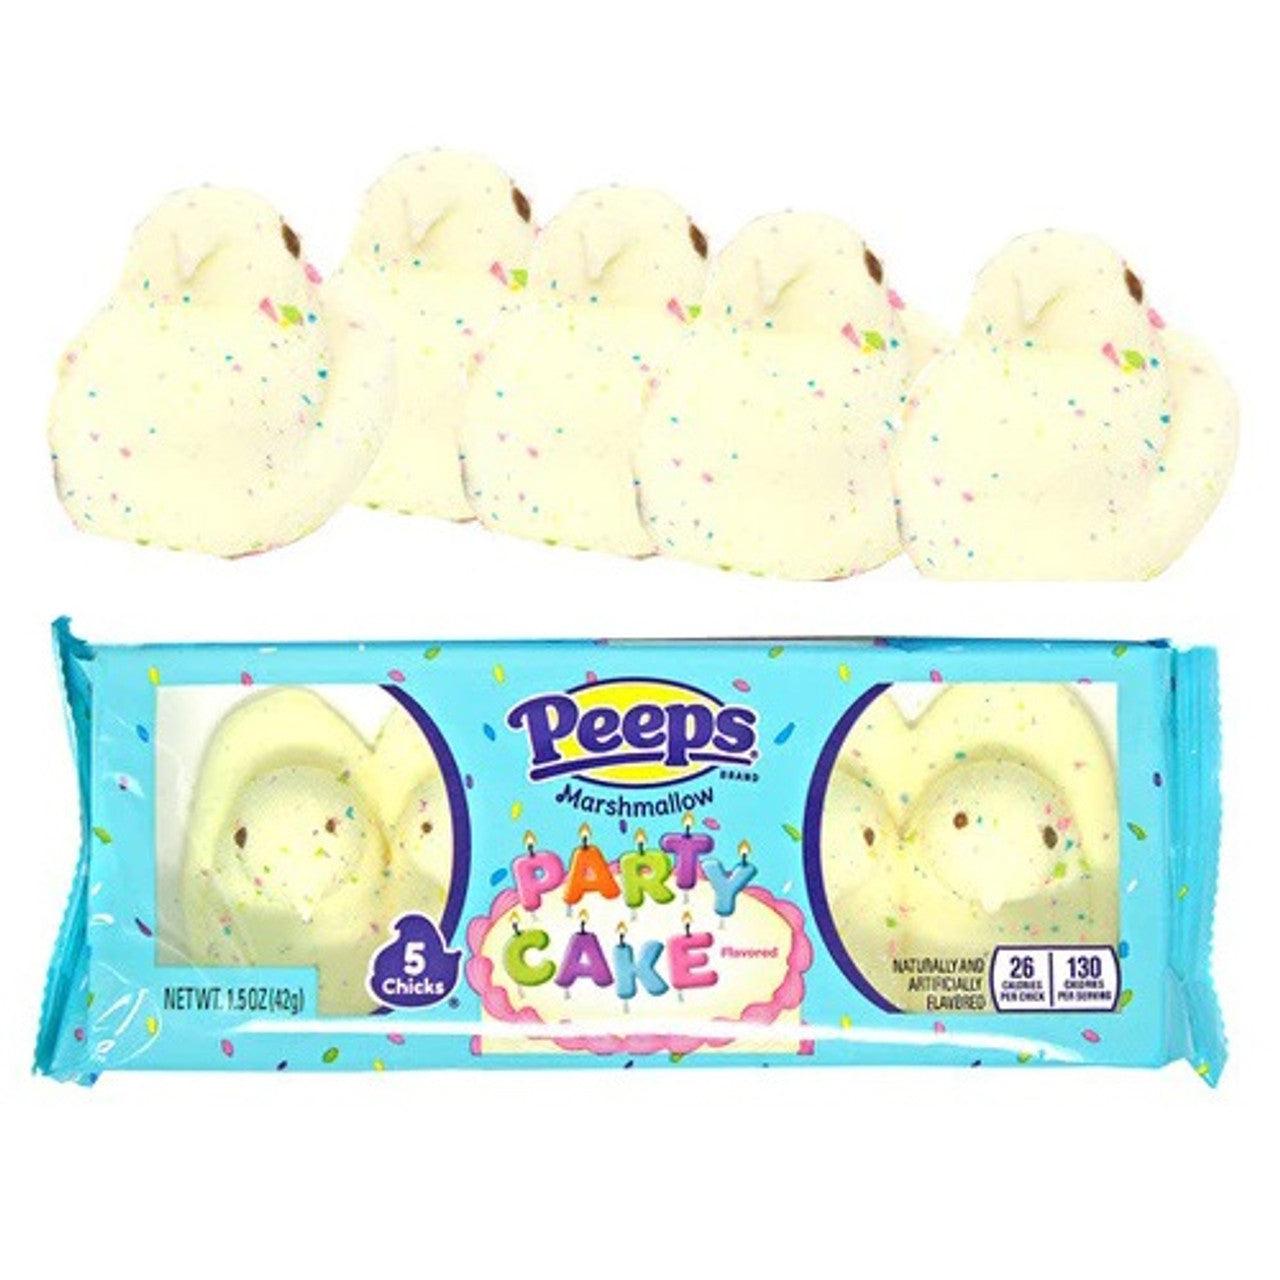 Peeps Marshmallow Party Cake Chicks 5 PK - Extreme Snacks